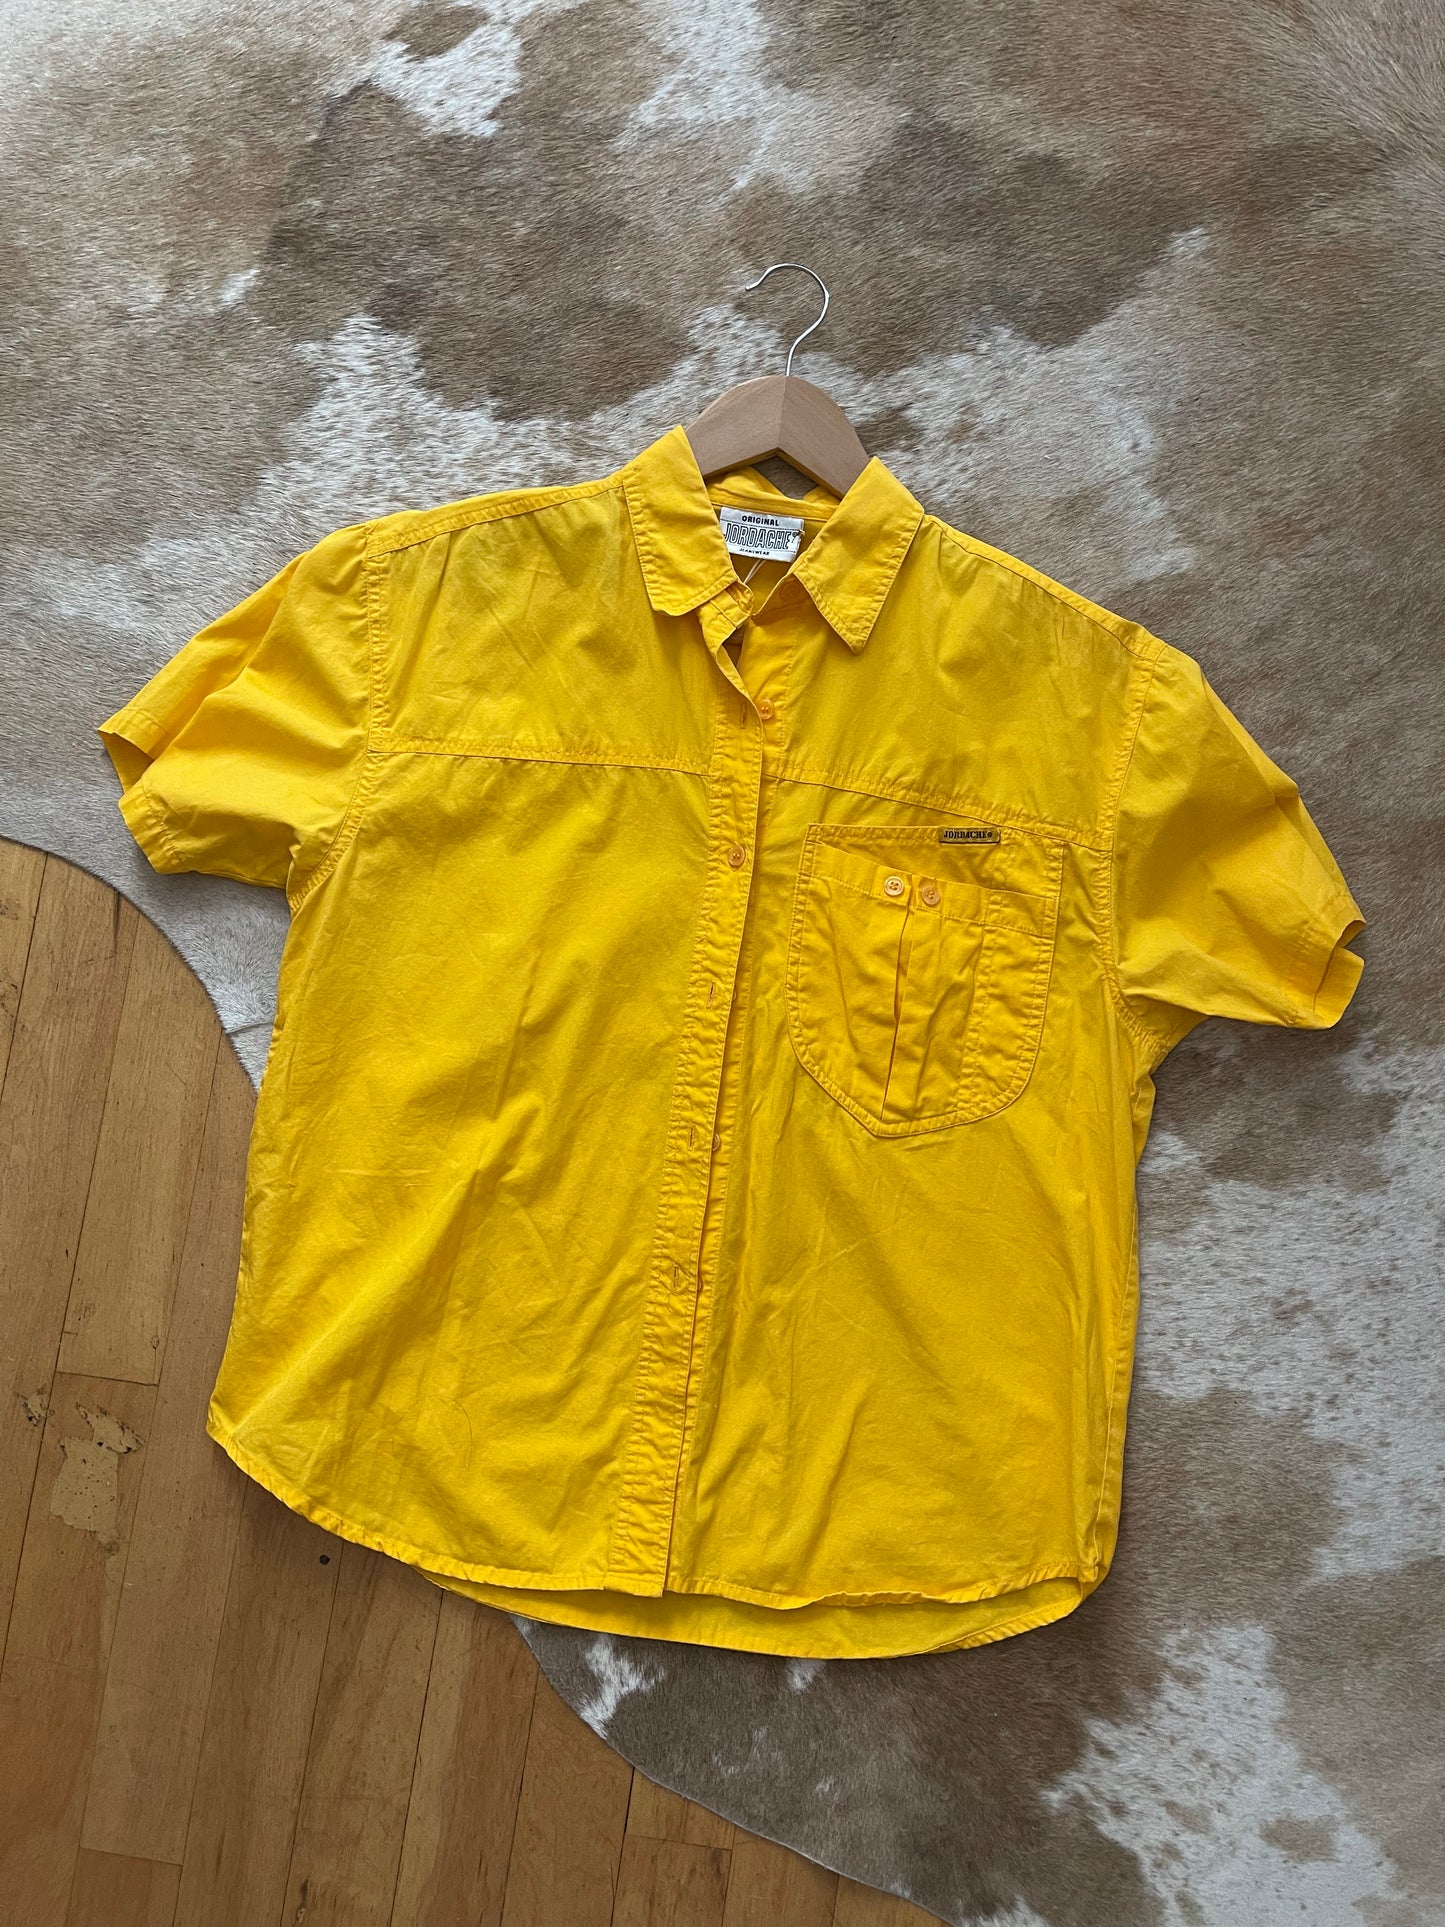 Vintage Sunshine Shirt - M